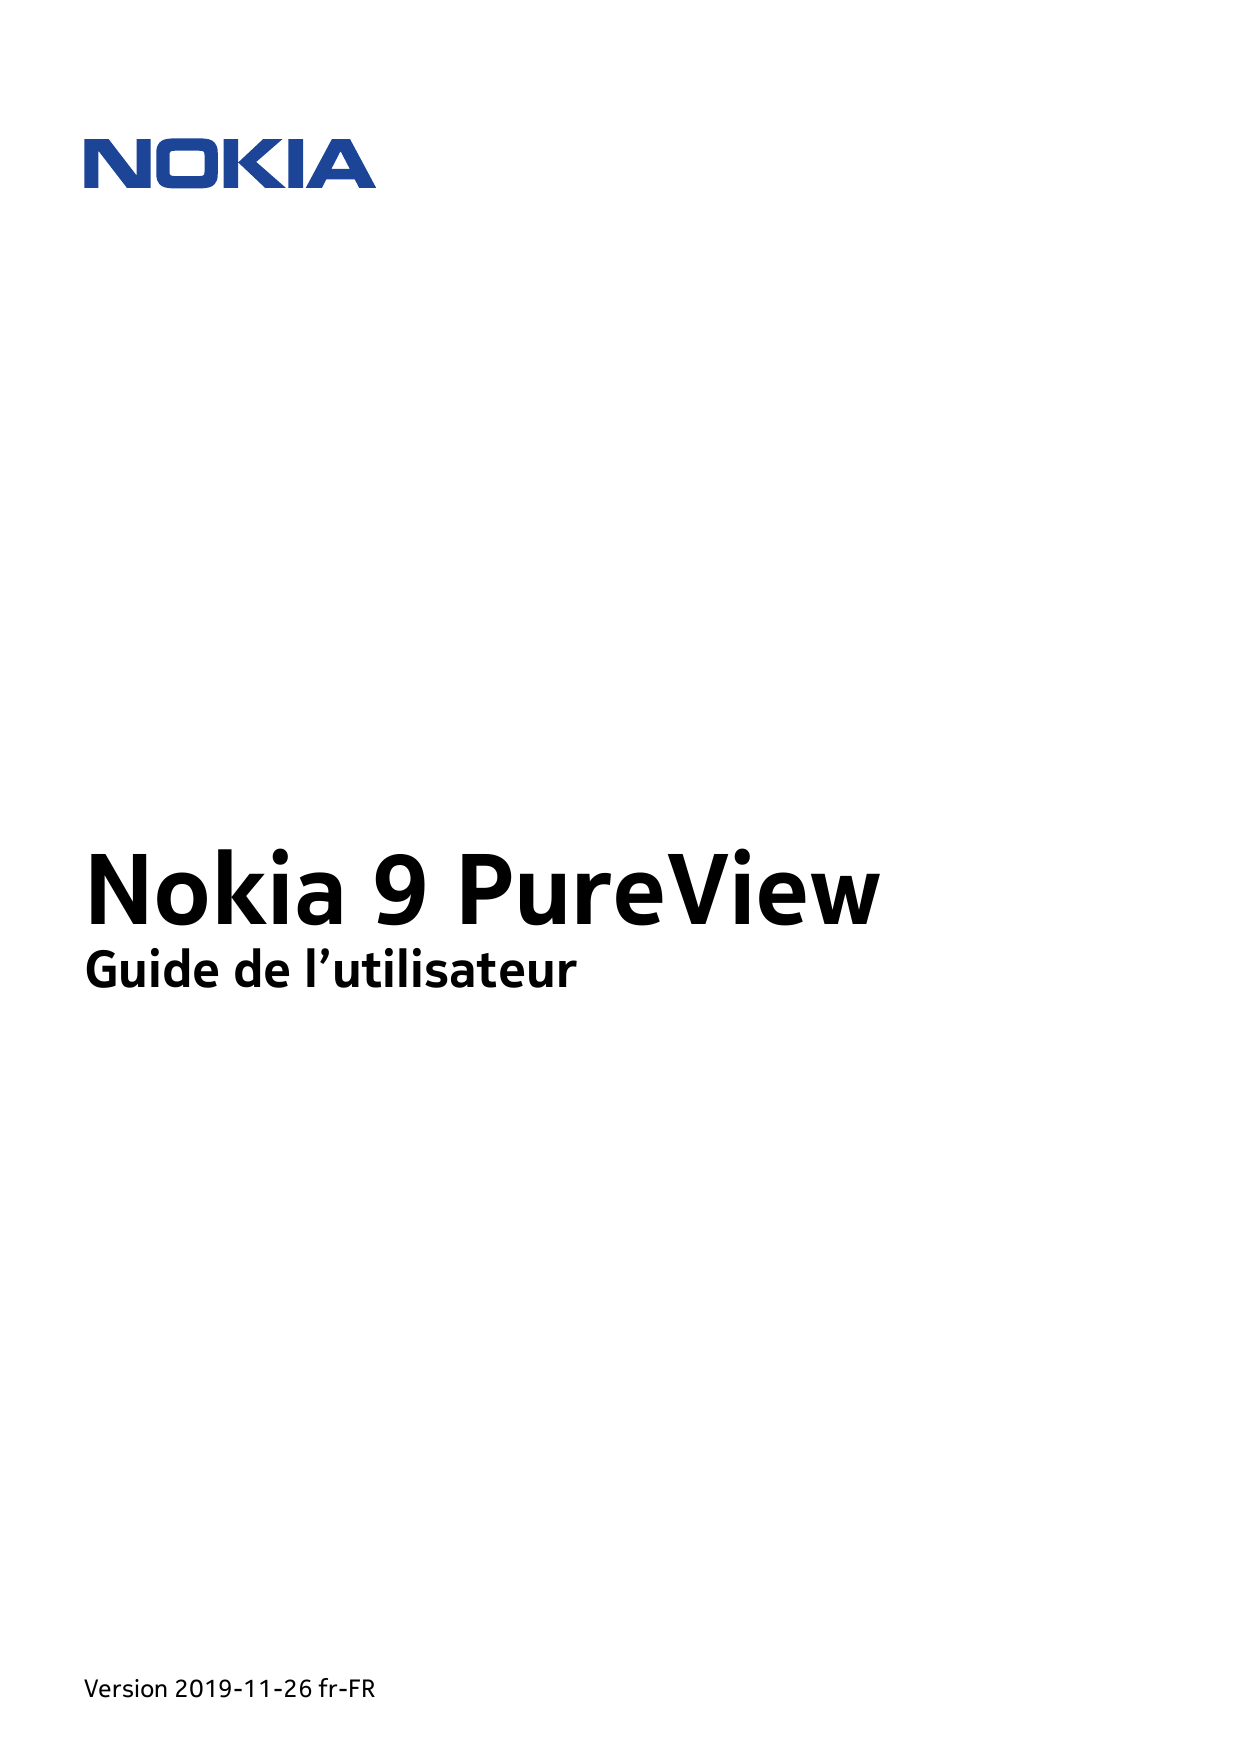 Nokia 9 PureViewGuide de l’utilisateurVersion 2019-11-26 fr-FR